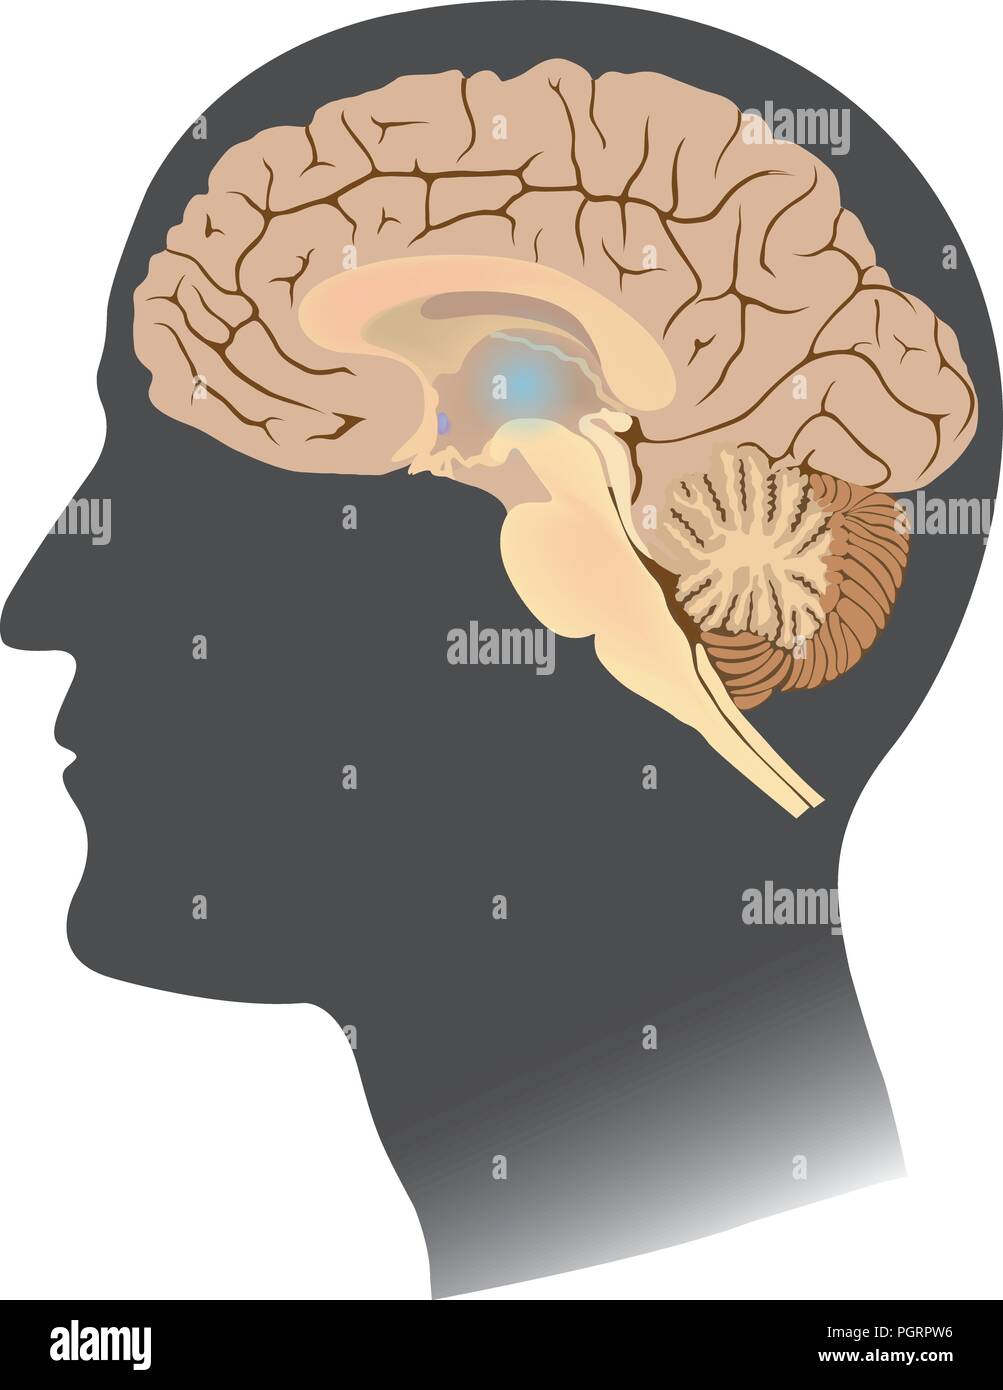 Menschliche Gehirn weiß isolieren. Anatomie Körper Infografik. Abbildung. Stock Vektor